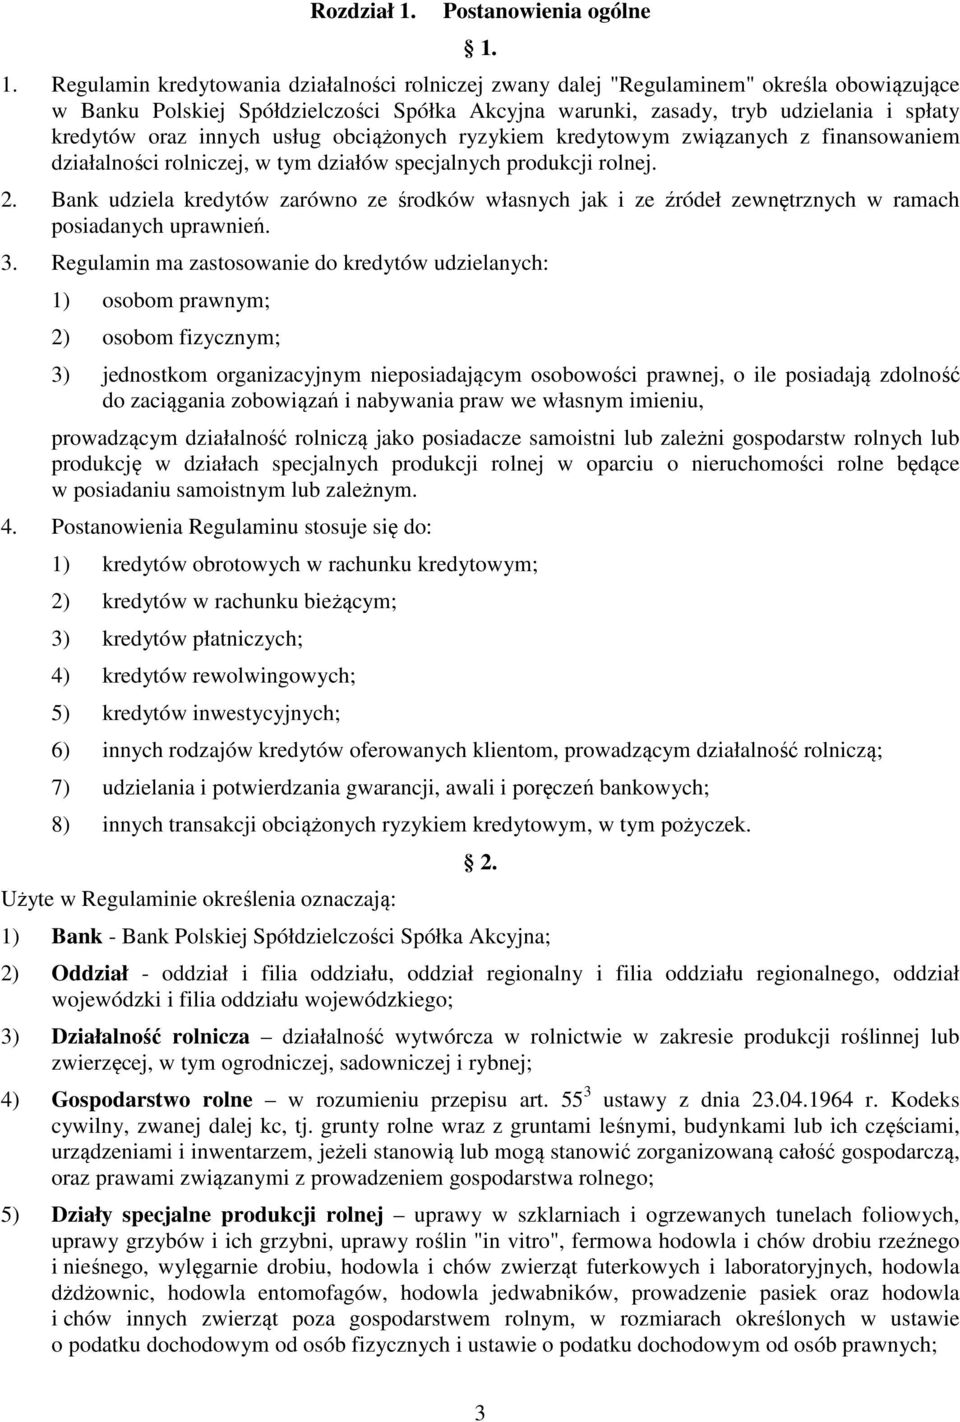 1. Regulamin kredytowania działalności rolniczej zwany dalej "Regulaminem" określa obowiązujące w Banku Polskiej Spółdzielczości Spółka Akcyjna warunki, zasady, tryb udzielania i spłaty kredytów oraz